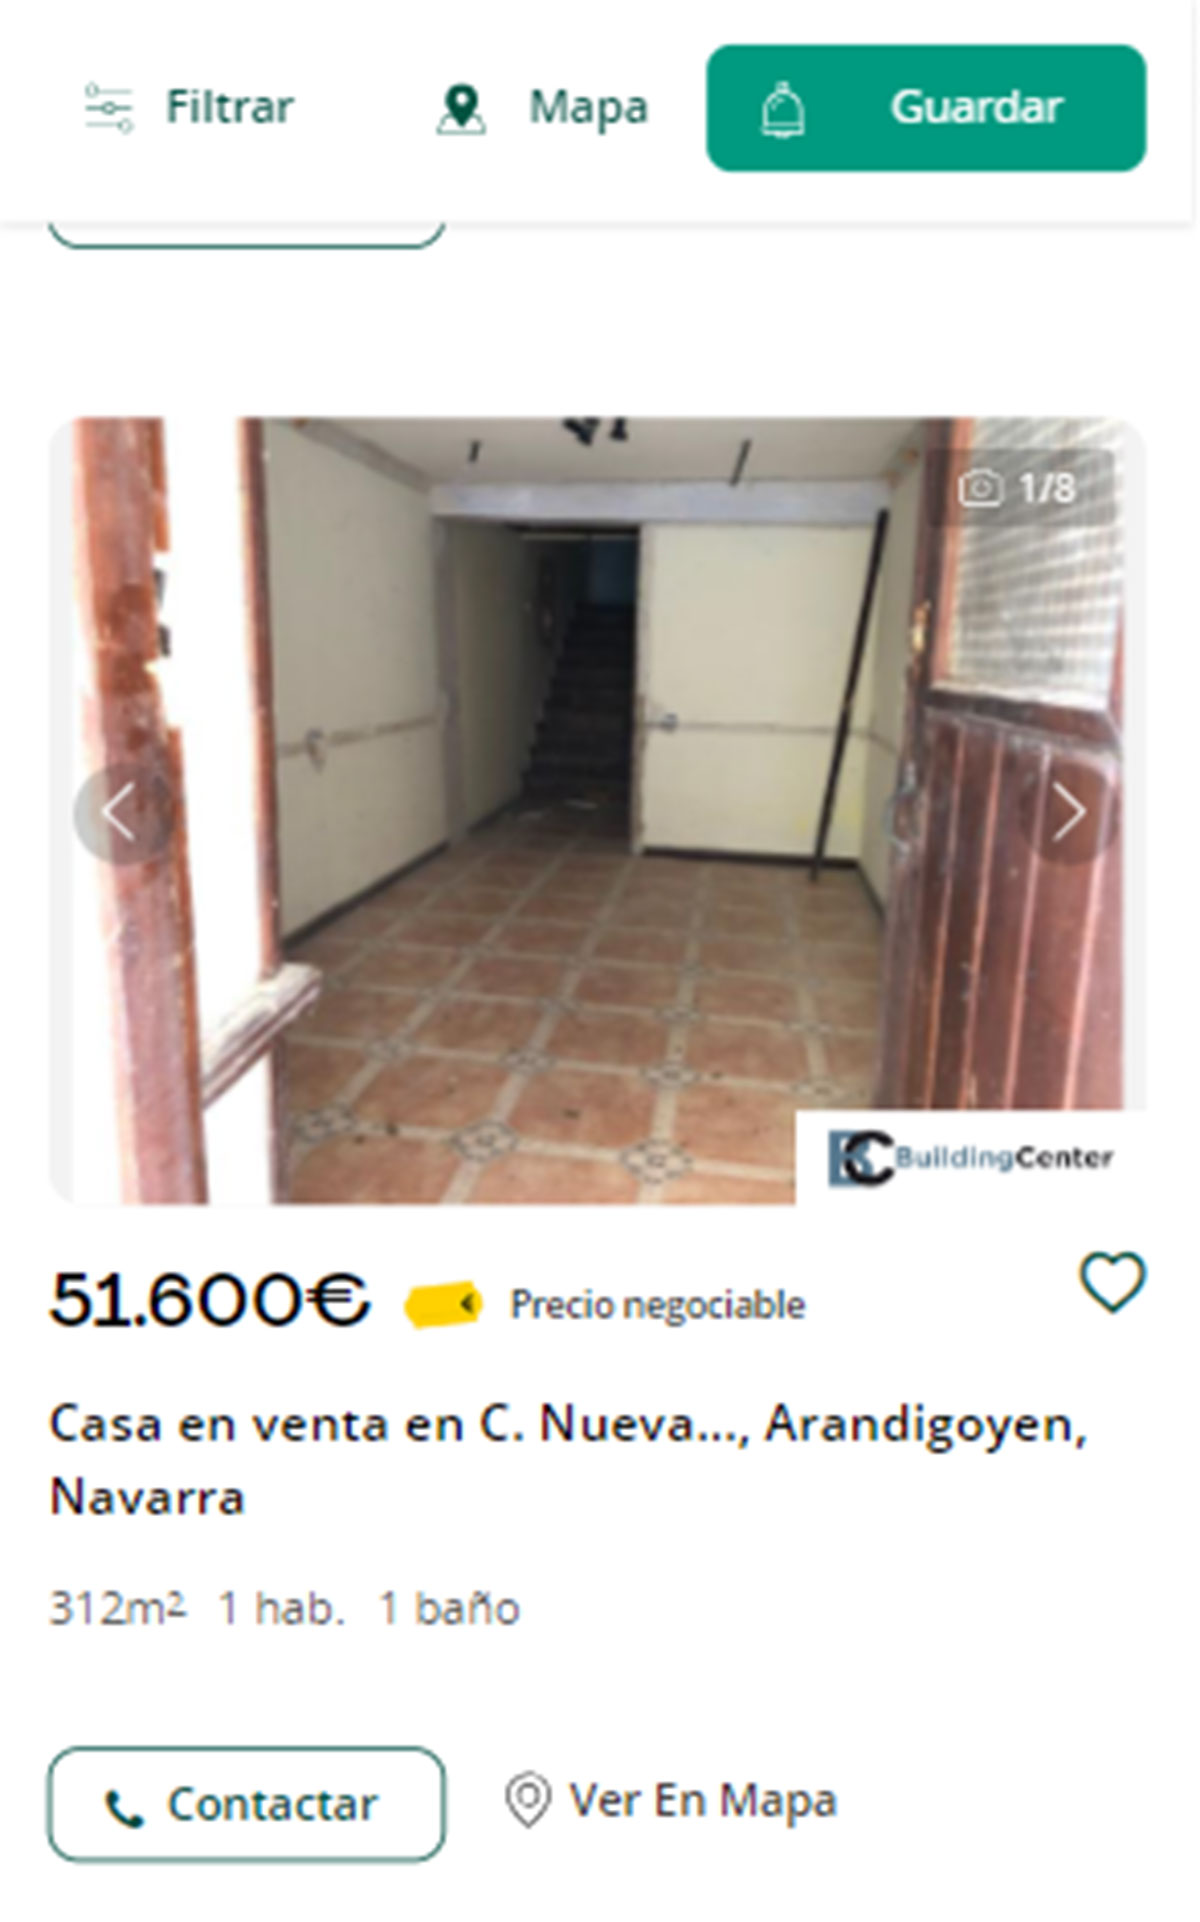 Piso en Navarra por 51.600 euros